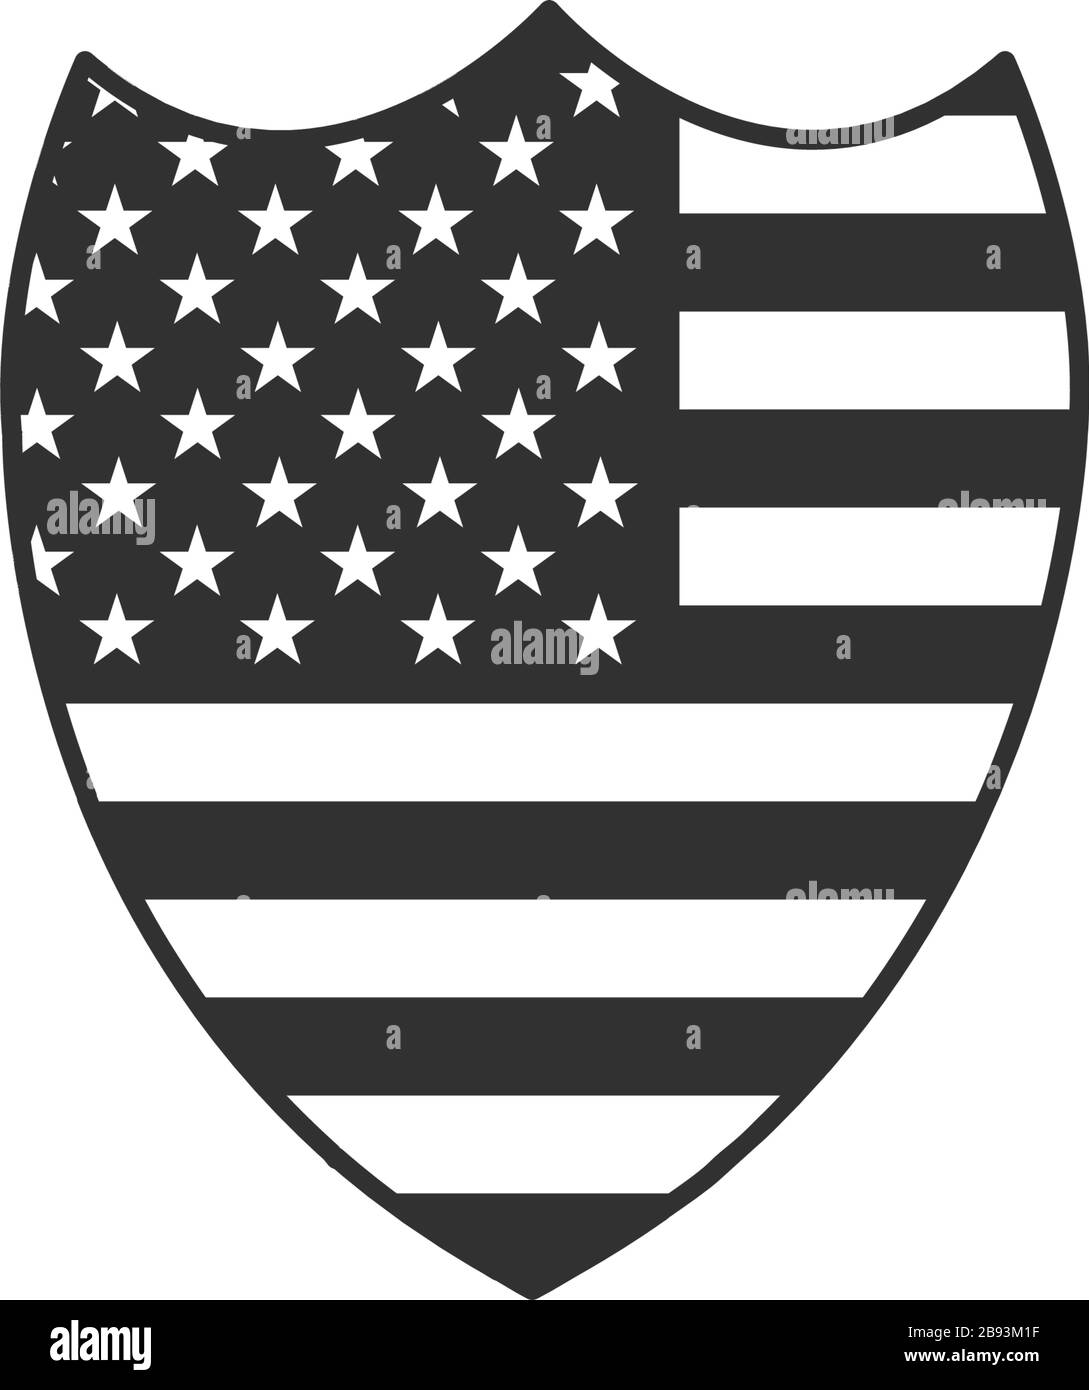 Drapeau américain et emblème du bouclier national des étoiles. Illustration vectorielle de stock isolée sur fond blanc. Illustration de Vecteur